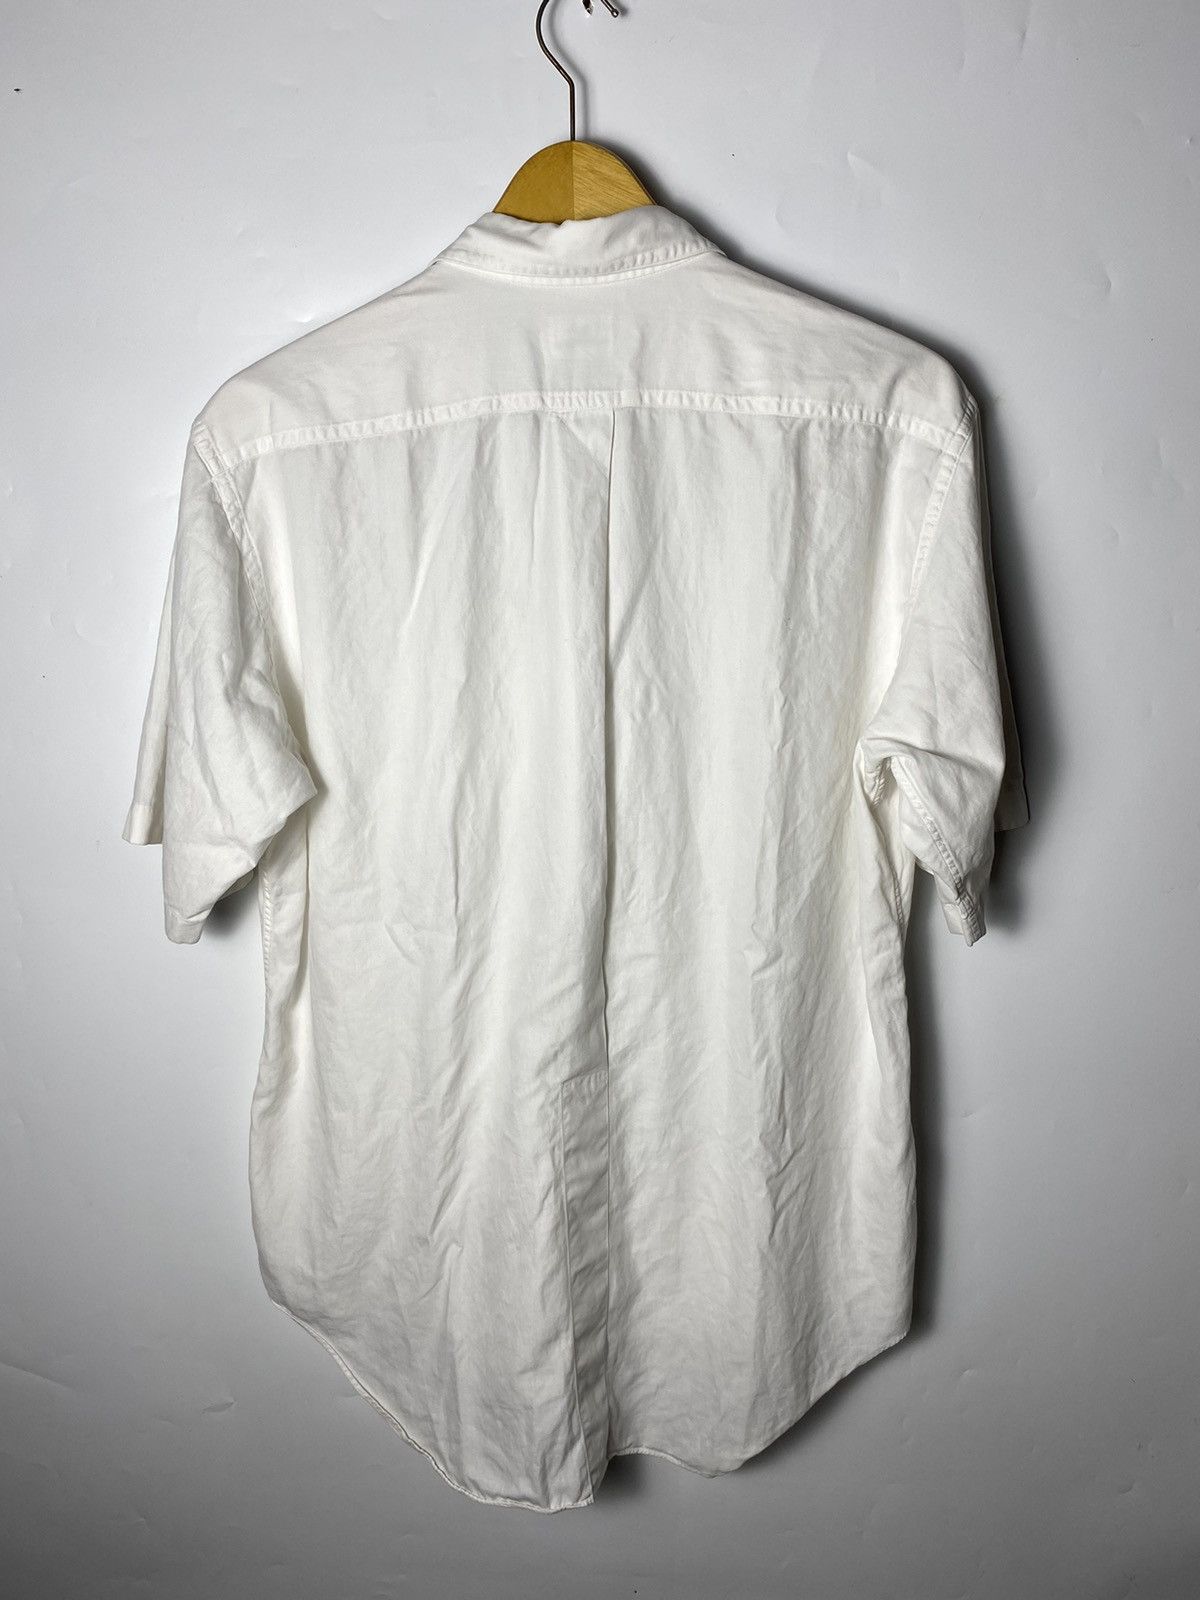 Issey Miyake vintage issey miyake white shirt pocket Size US M / EU 48-50 / 2 - 7 Thumbnail